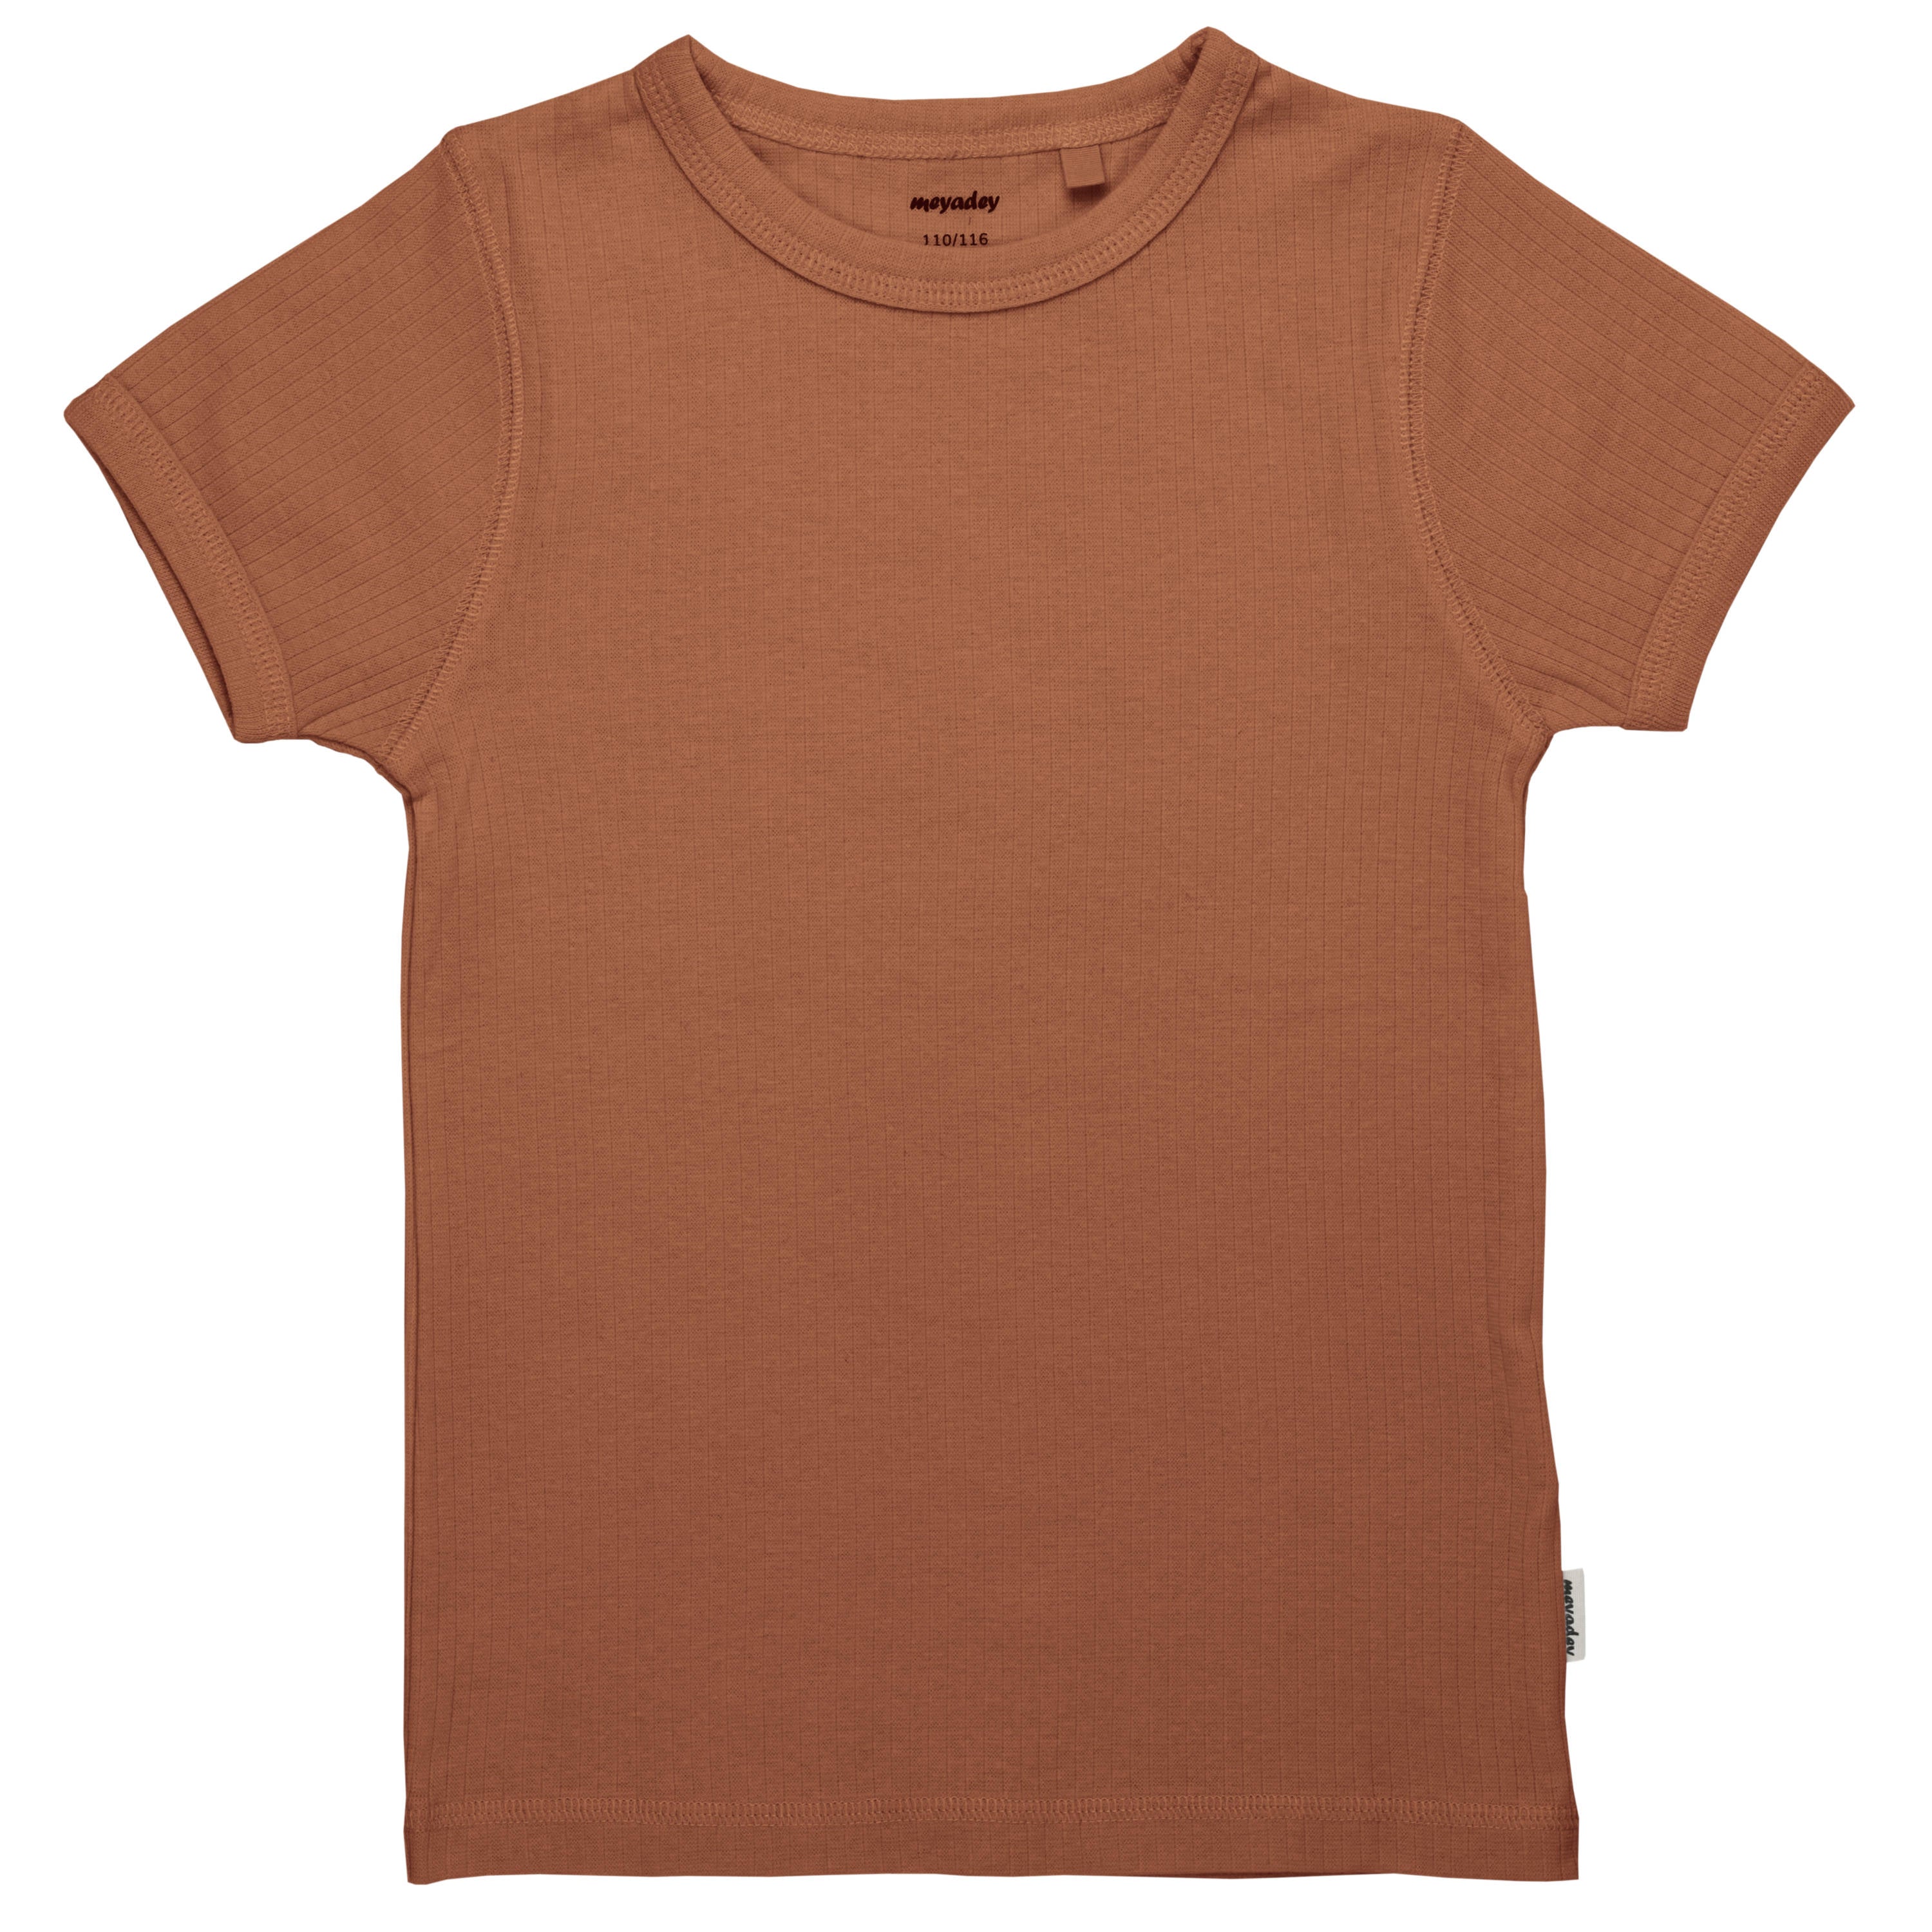 T-shirt Rib Solid Claystone - Meyadey (Maxomorra)